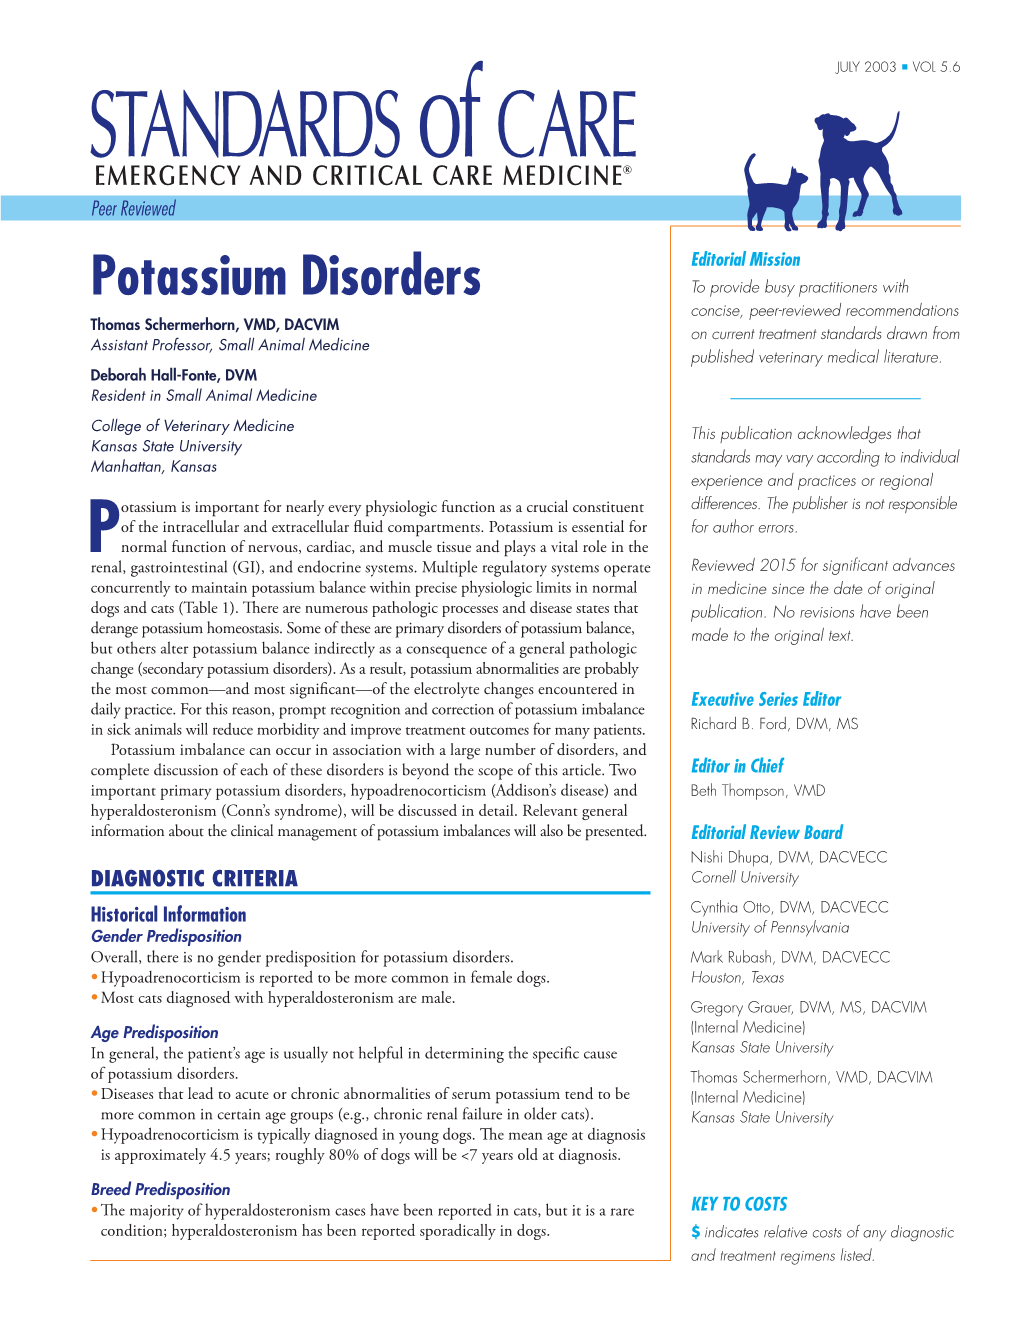 Potassium Disorders